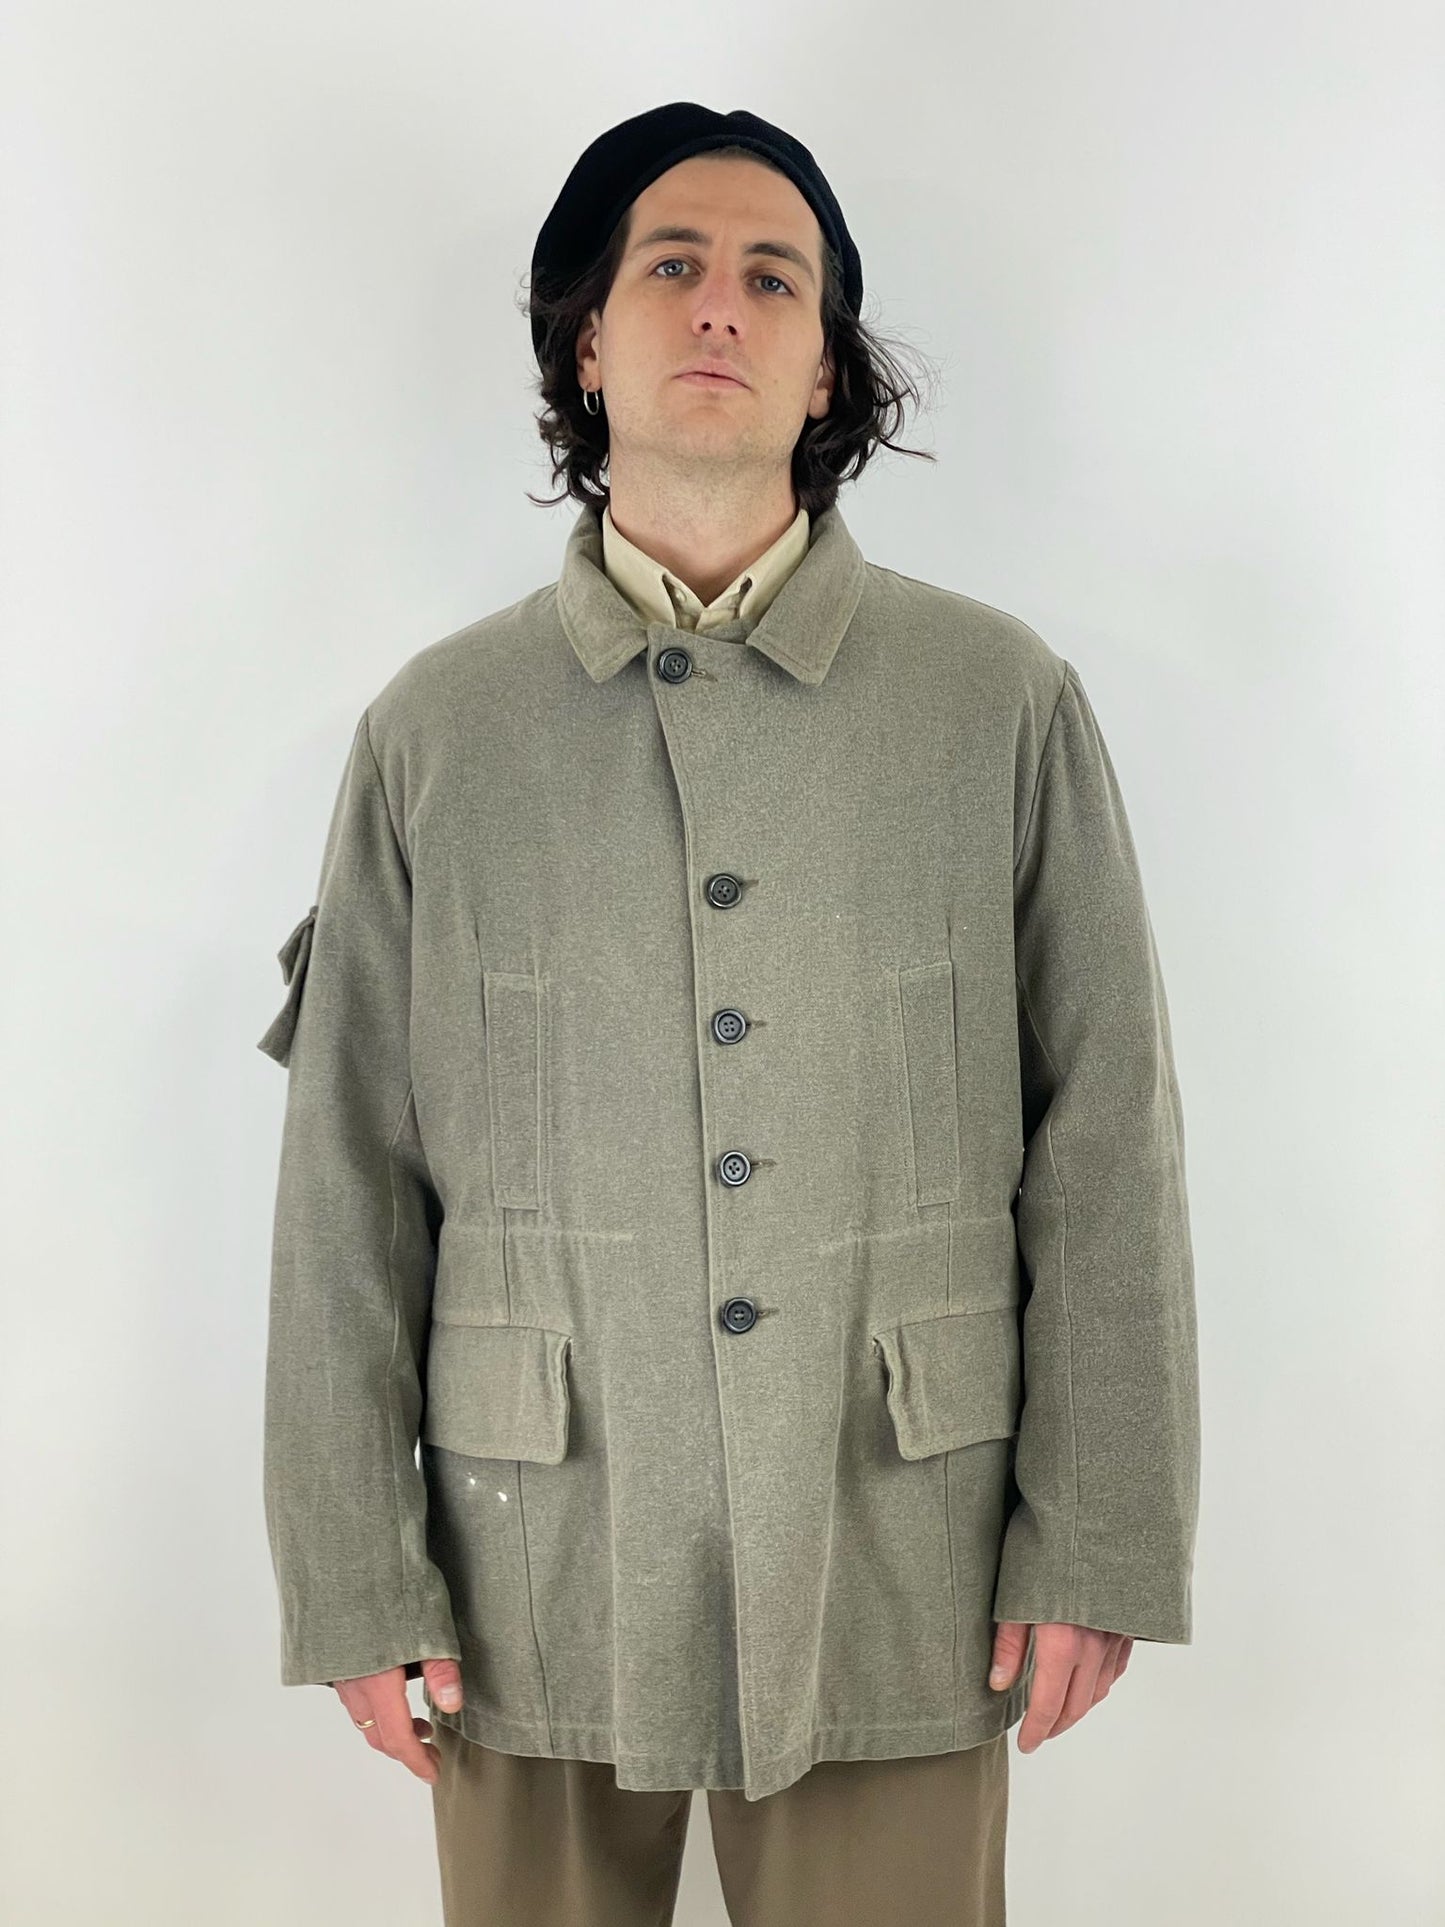 MICHA OHM 1970 jacket